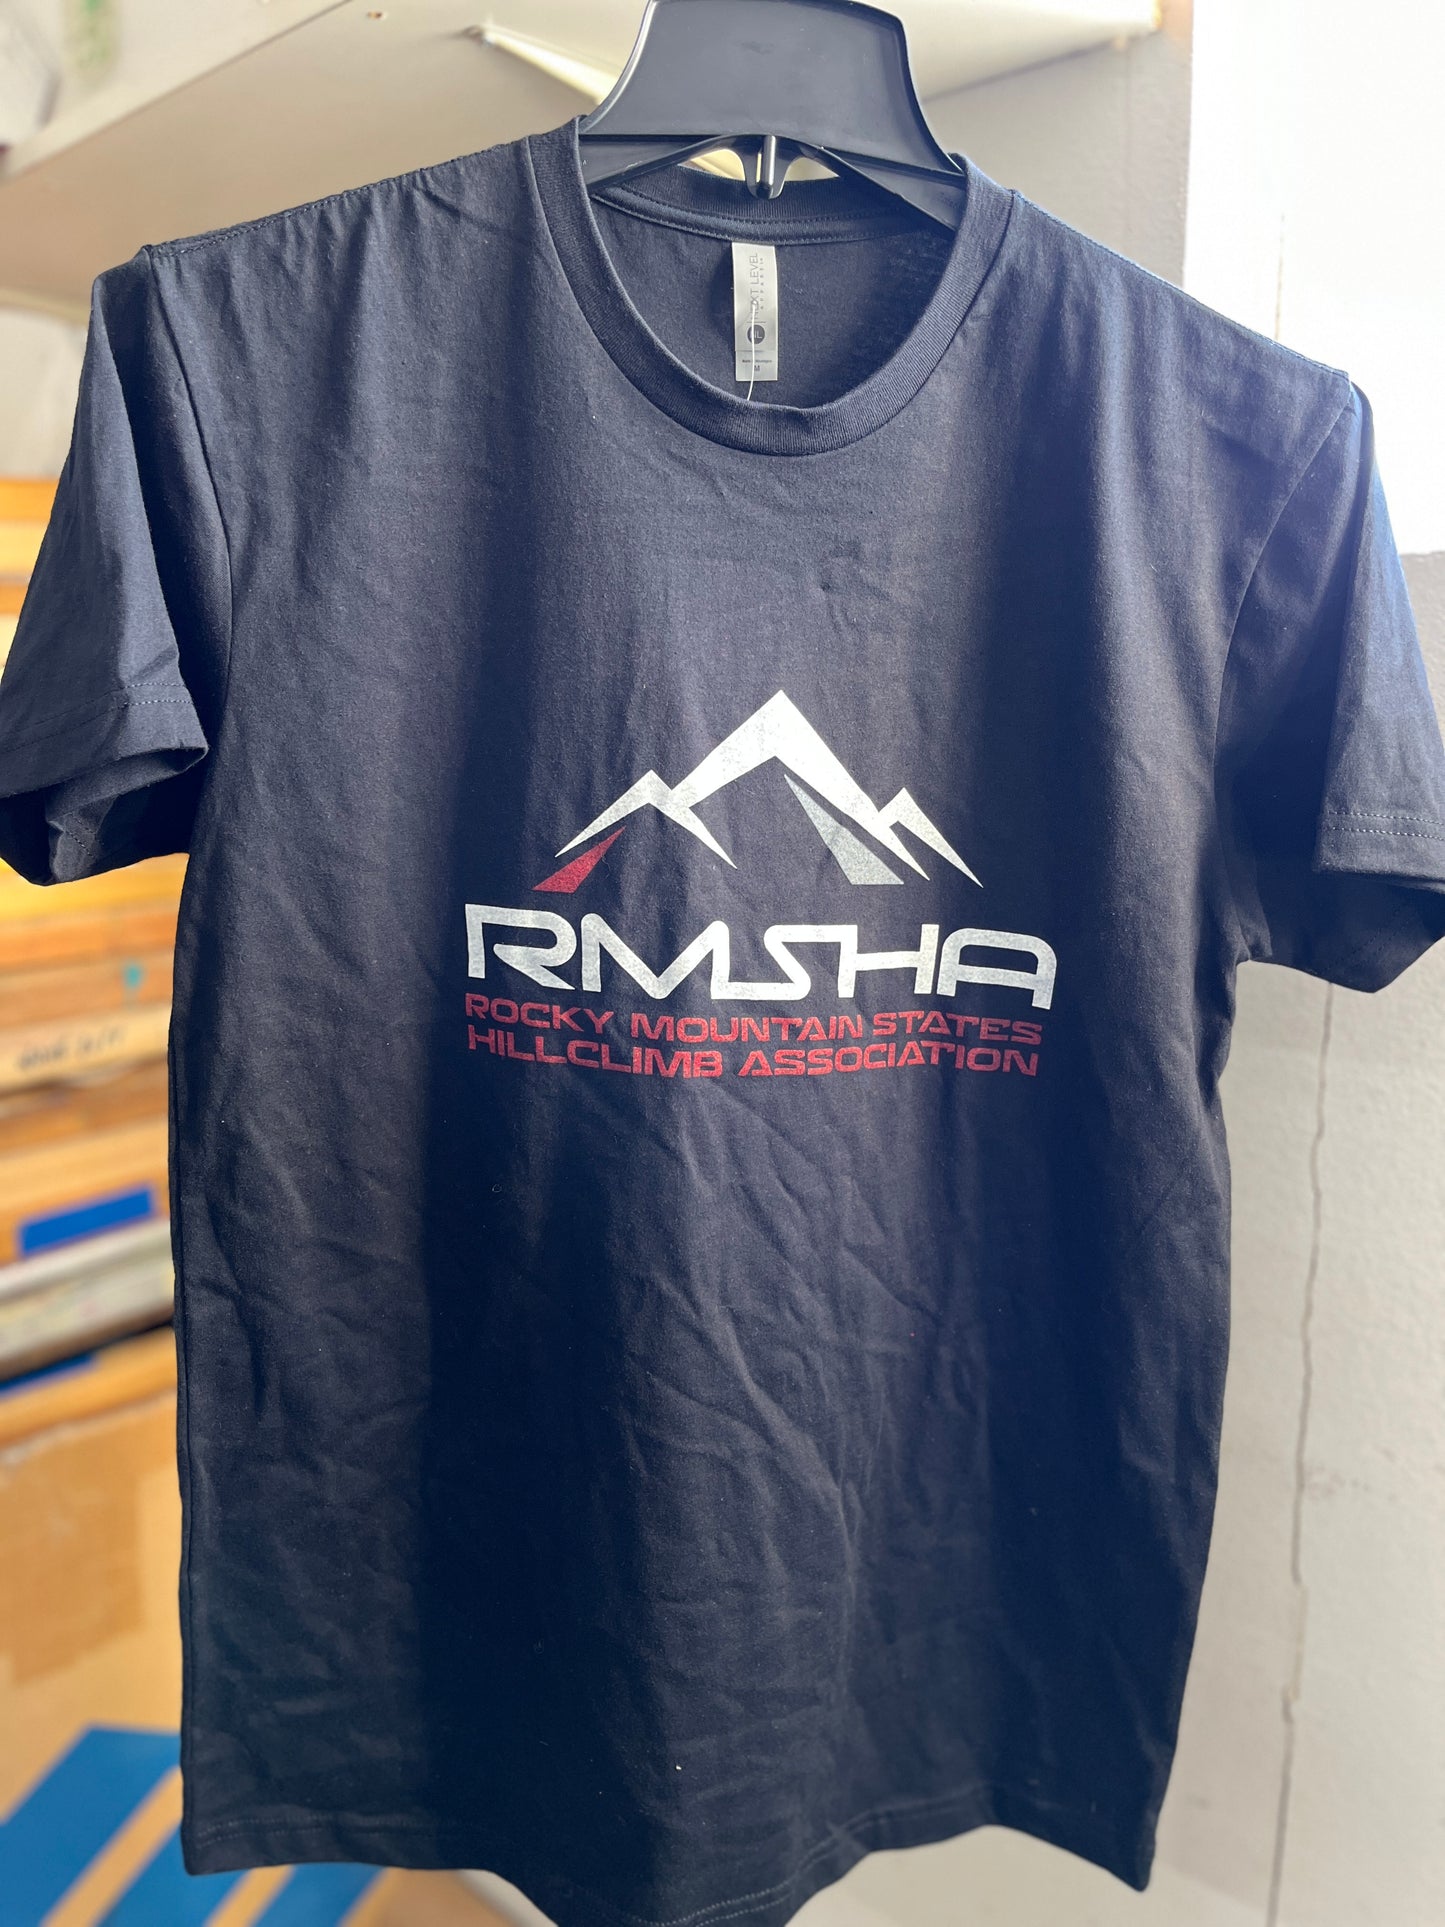 RMSHA Black Short Sleeve T-Shirt